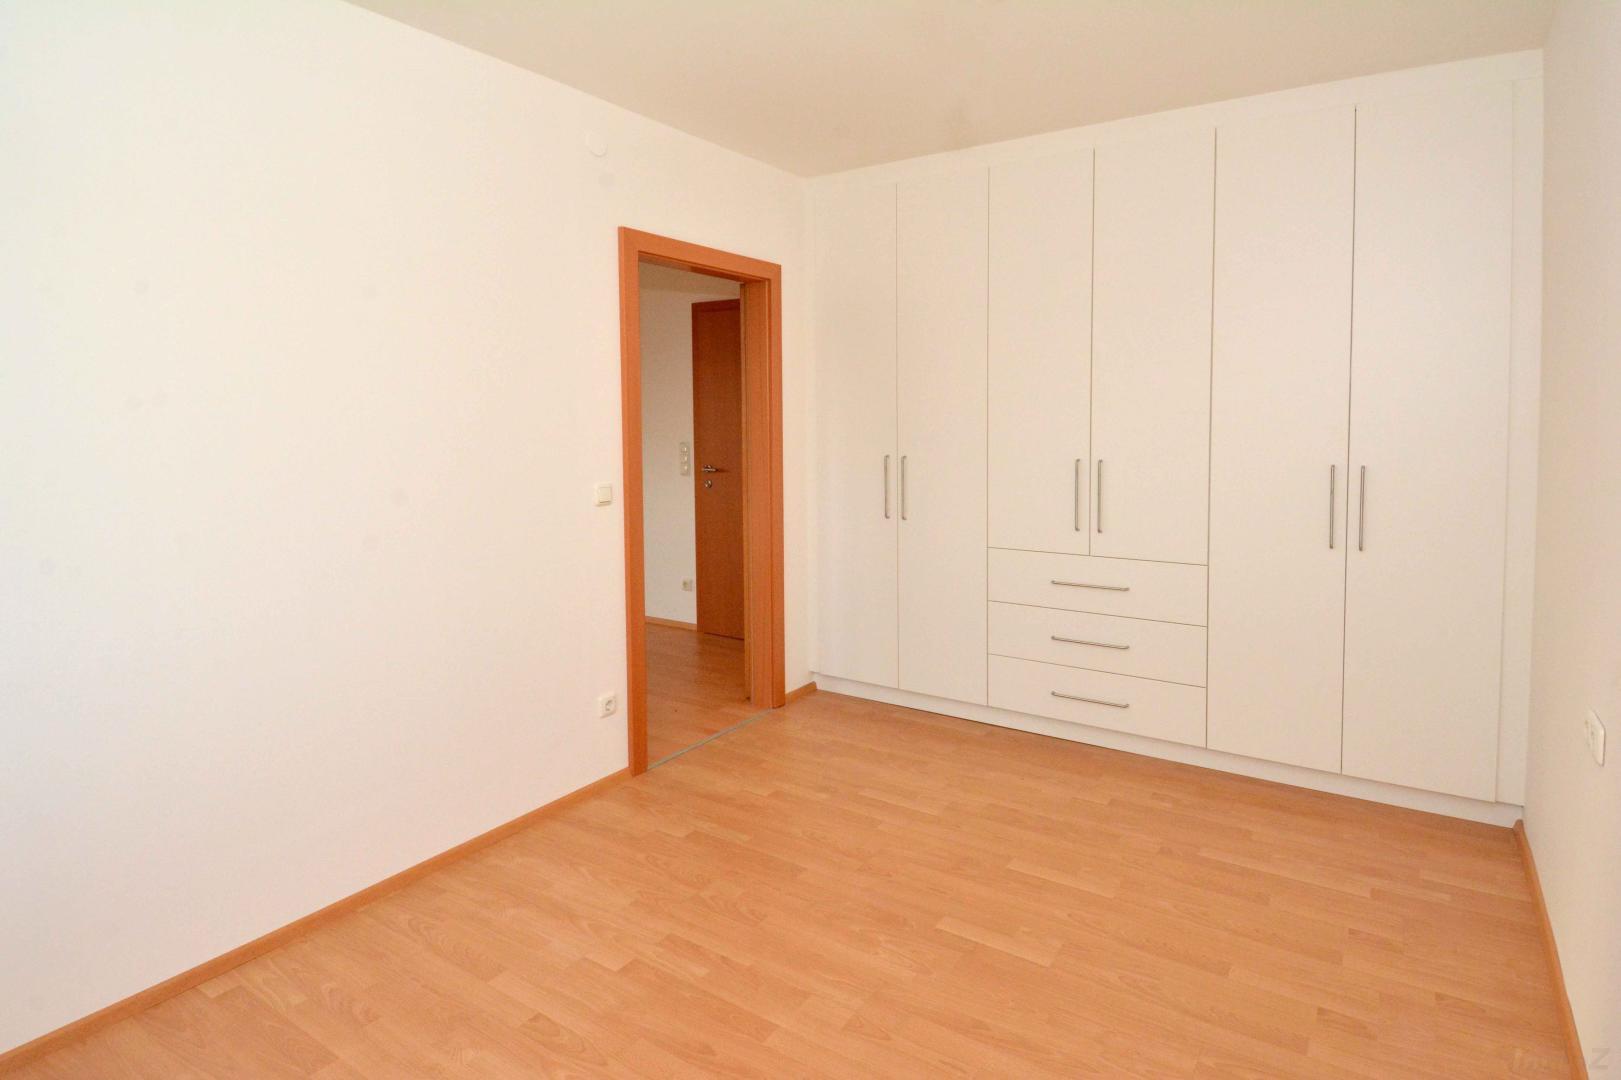 Wohnung zum Mieten: 8042 Graz - Schlafzimmer mit modernem Einbauschrank.